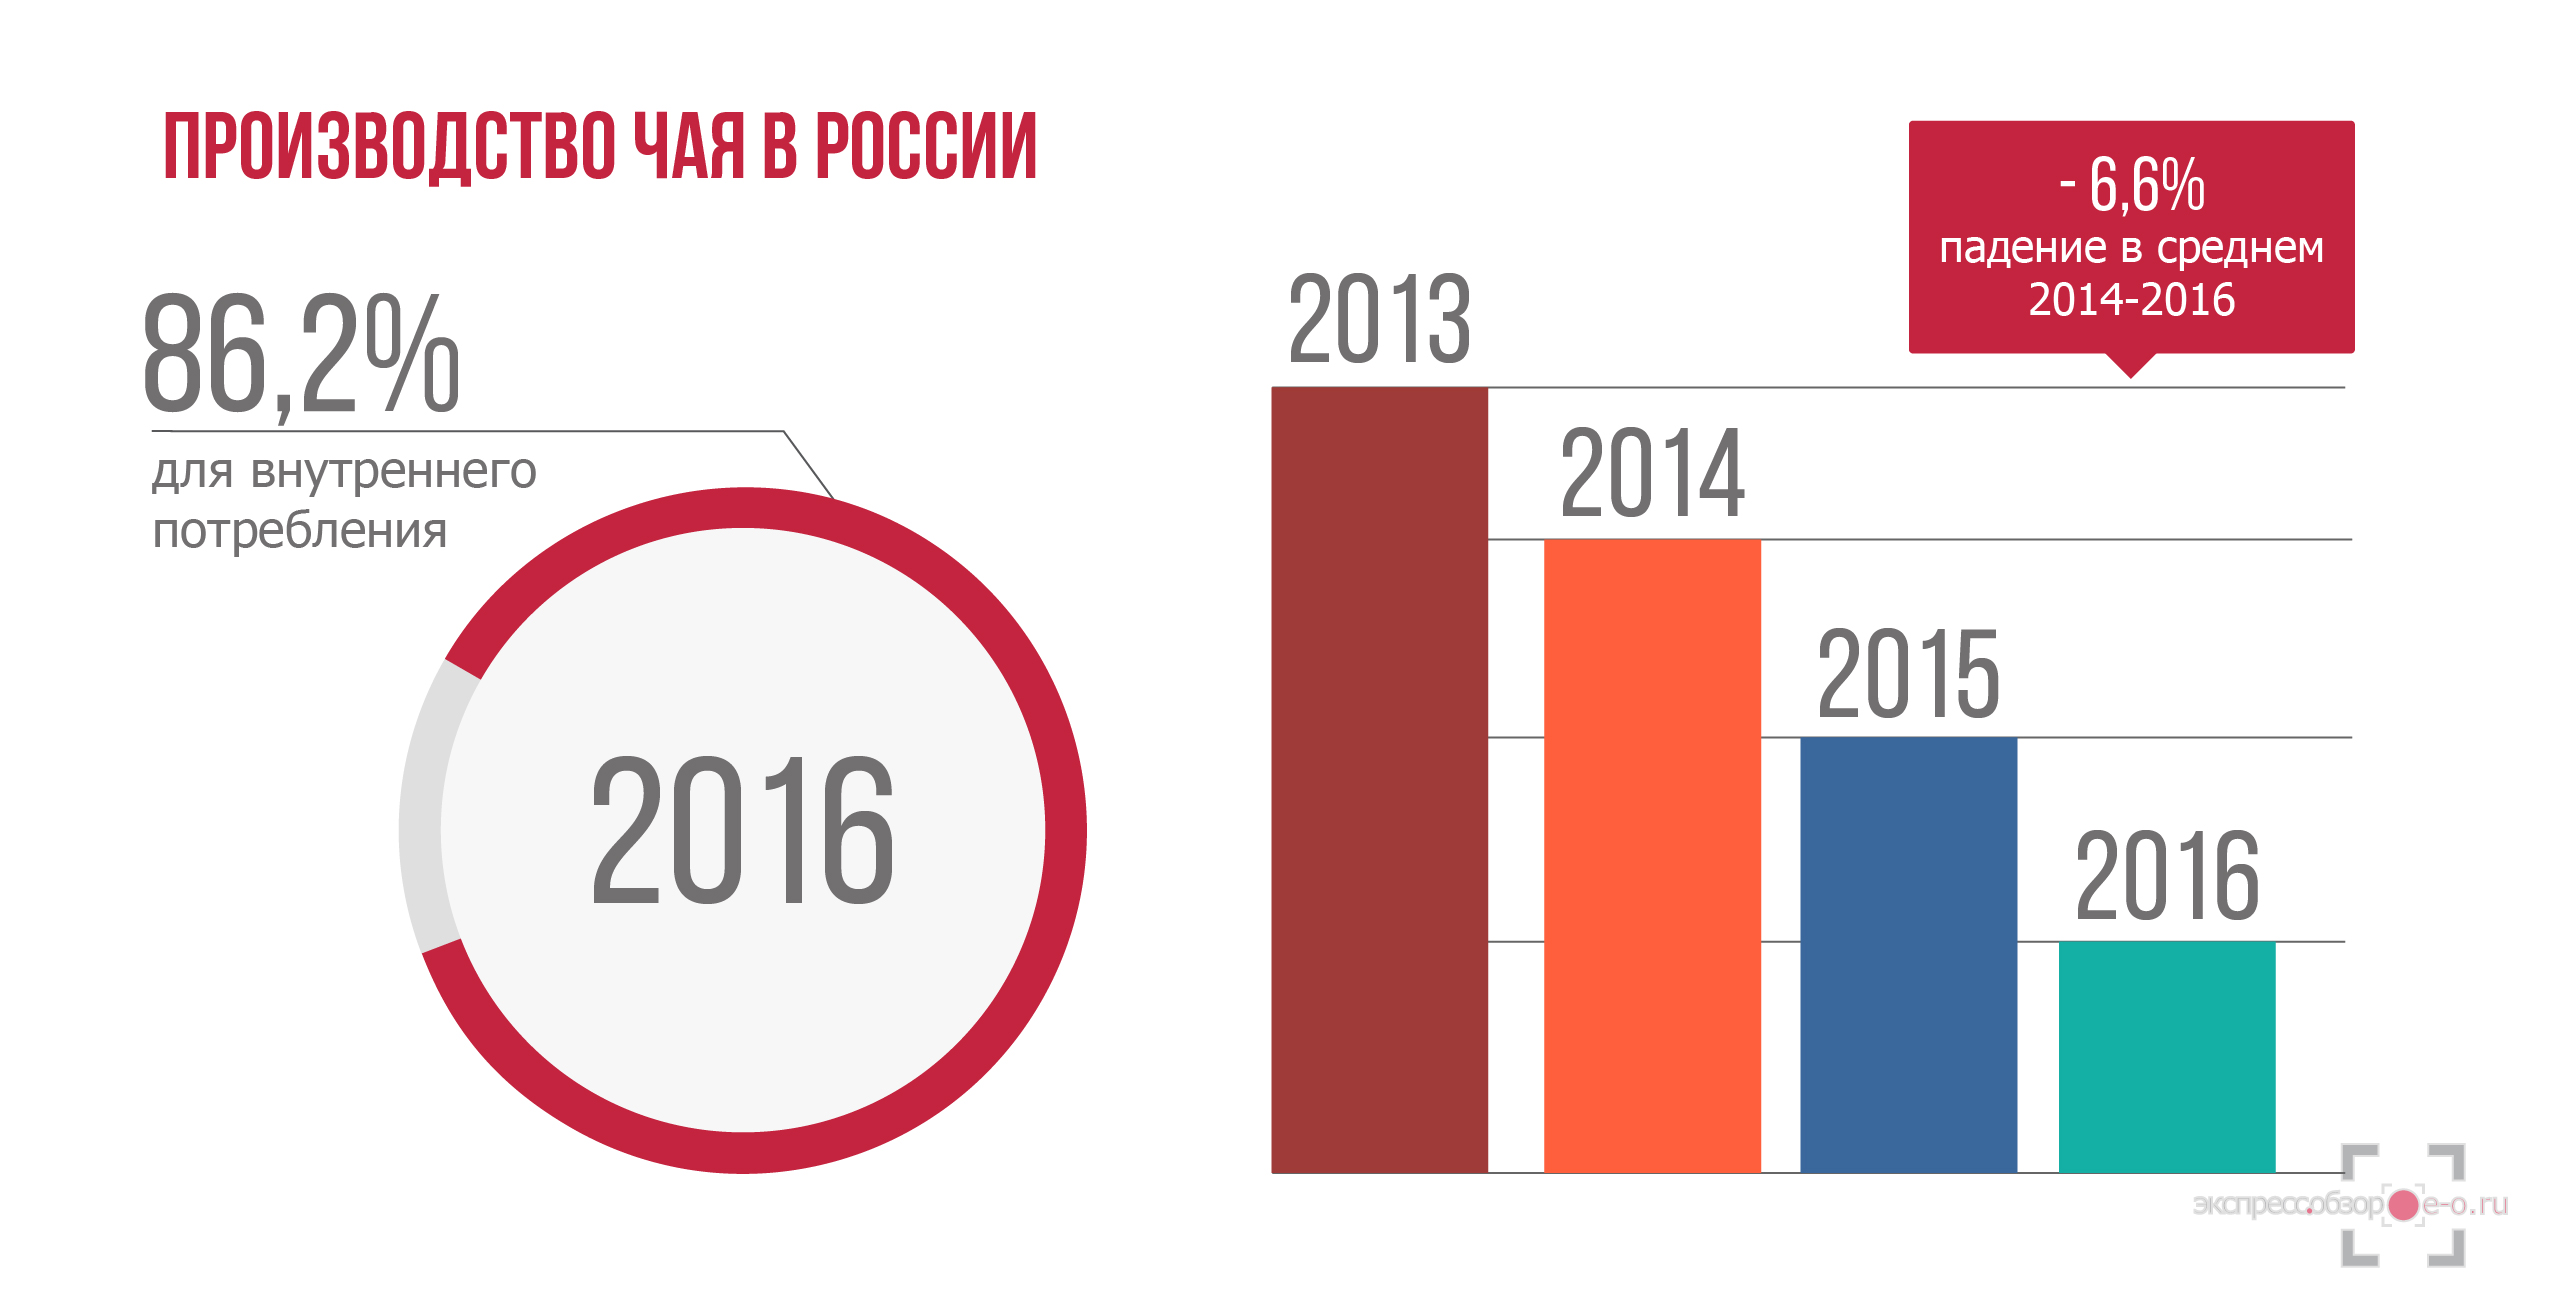 Производство чая в России в 2016 году